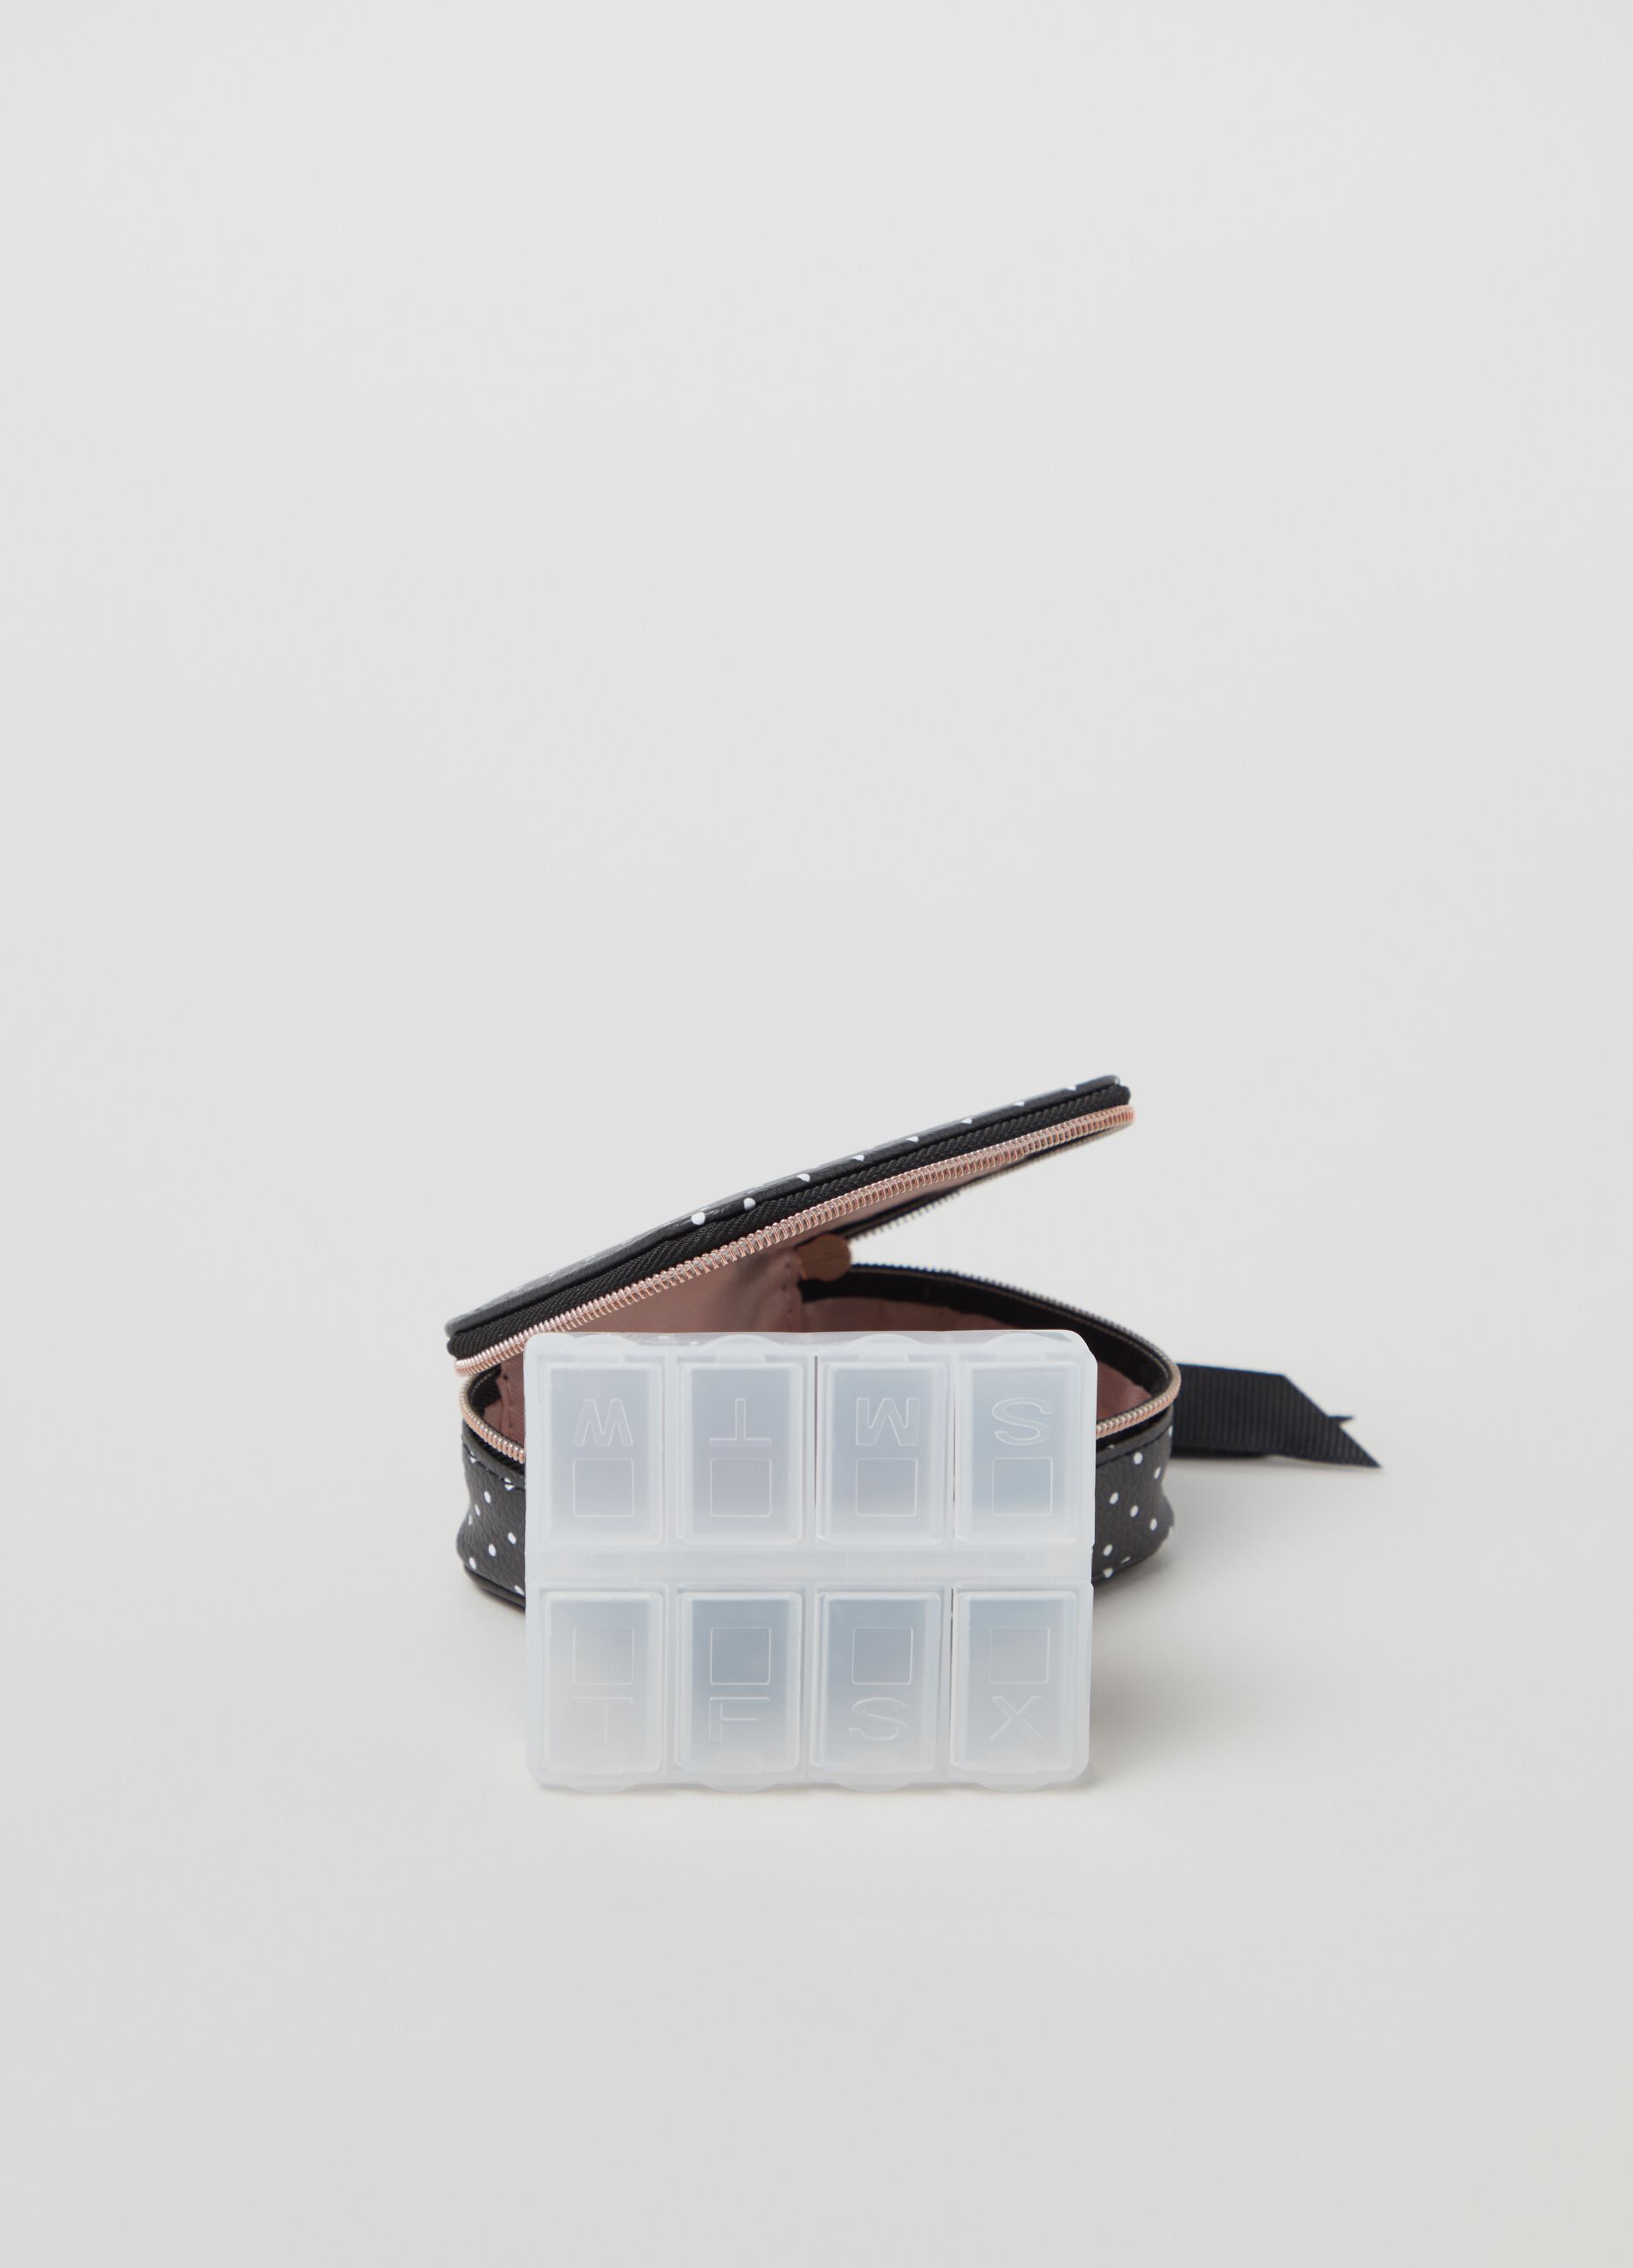 Woman's Black/White Pill box case